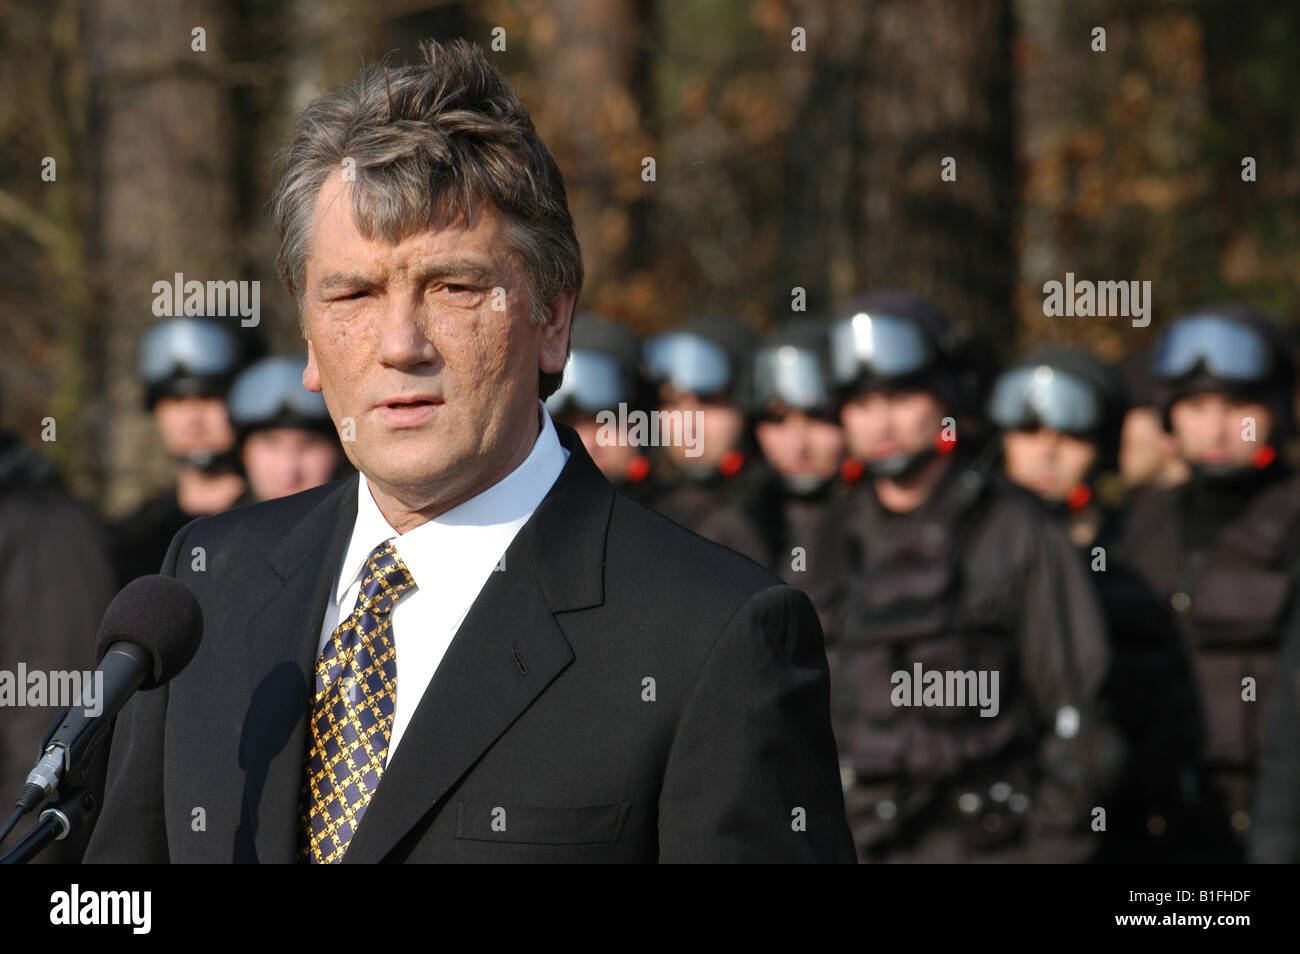 President of Ukraine Viktor Yushchenko Stock Photo